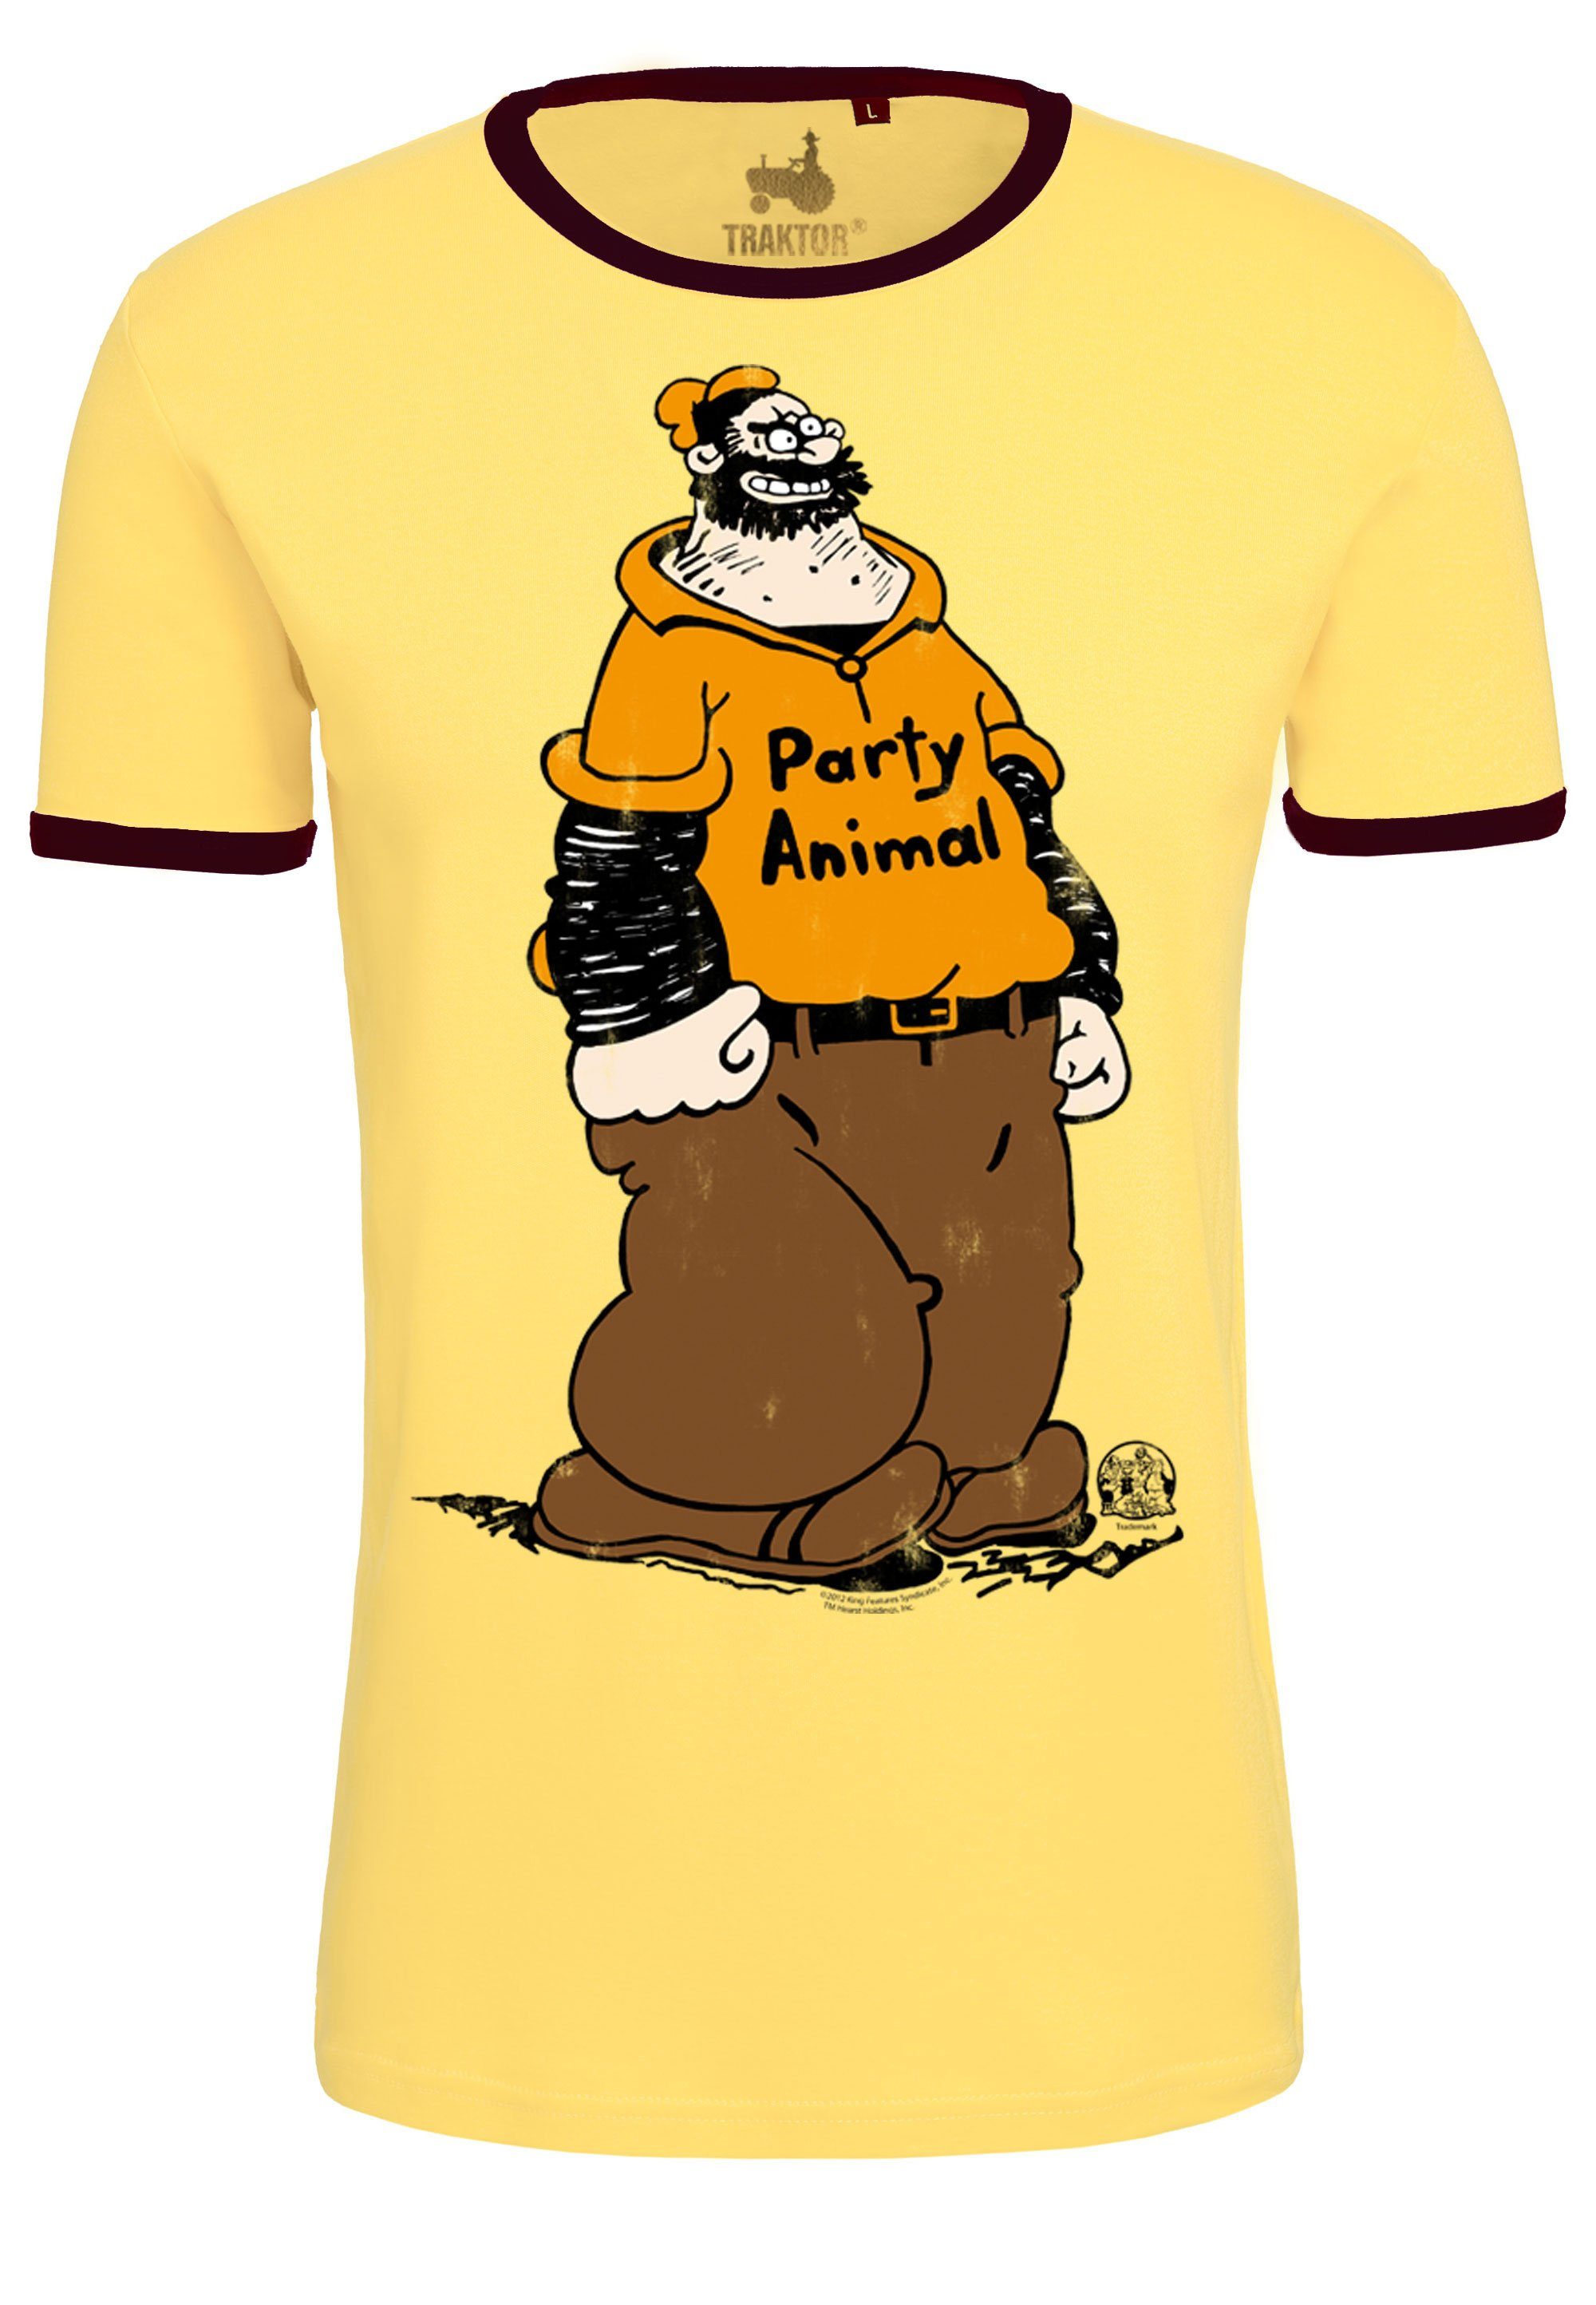 LOGOSHIRT T-Shirt gelb-braun Animal Popeye trendigem Comic-Print Brutus Party - mit